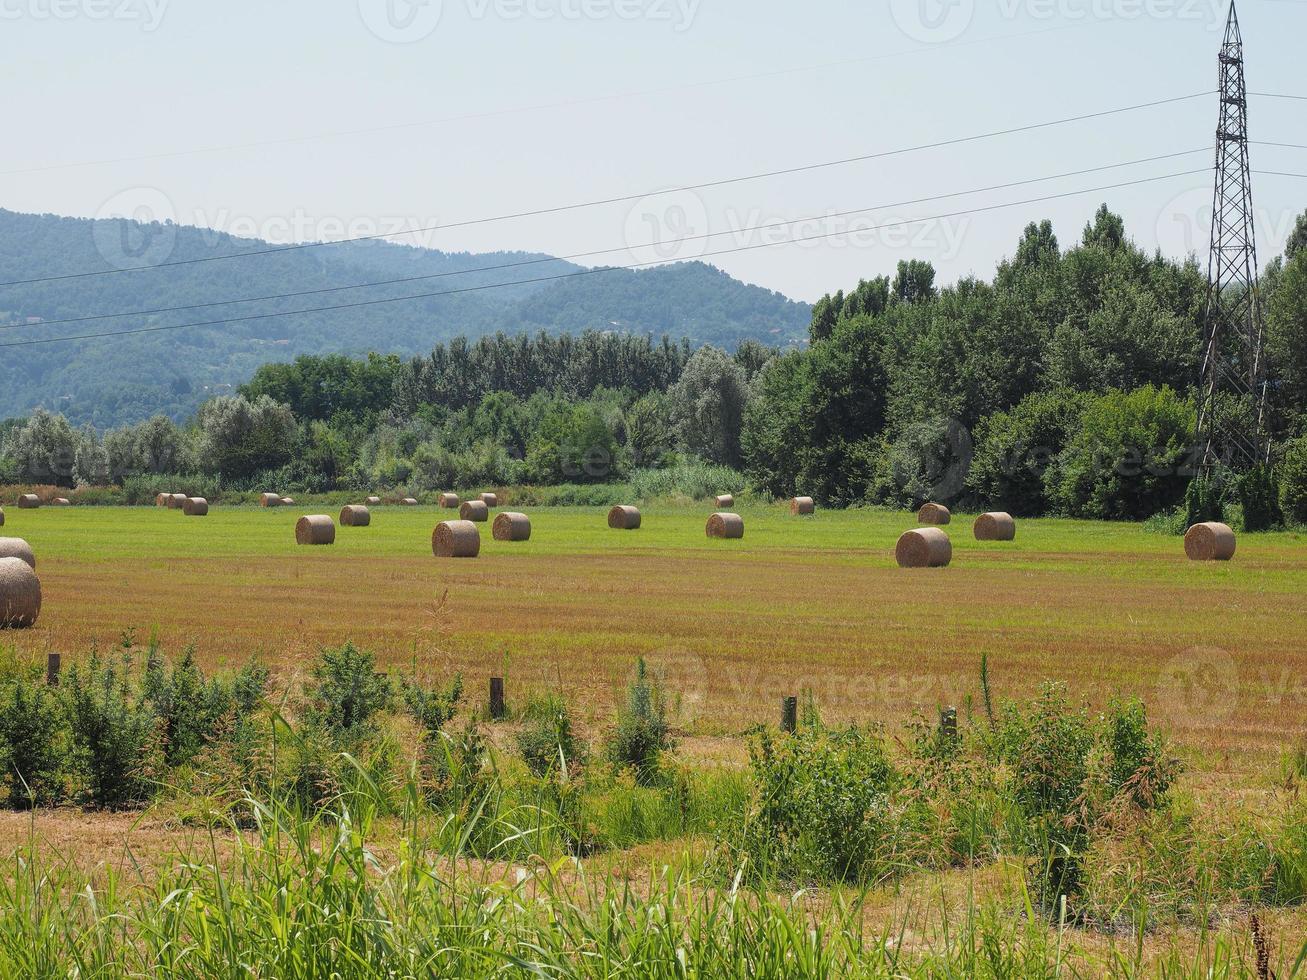 Hay bale in a field photo